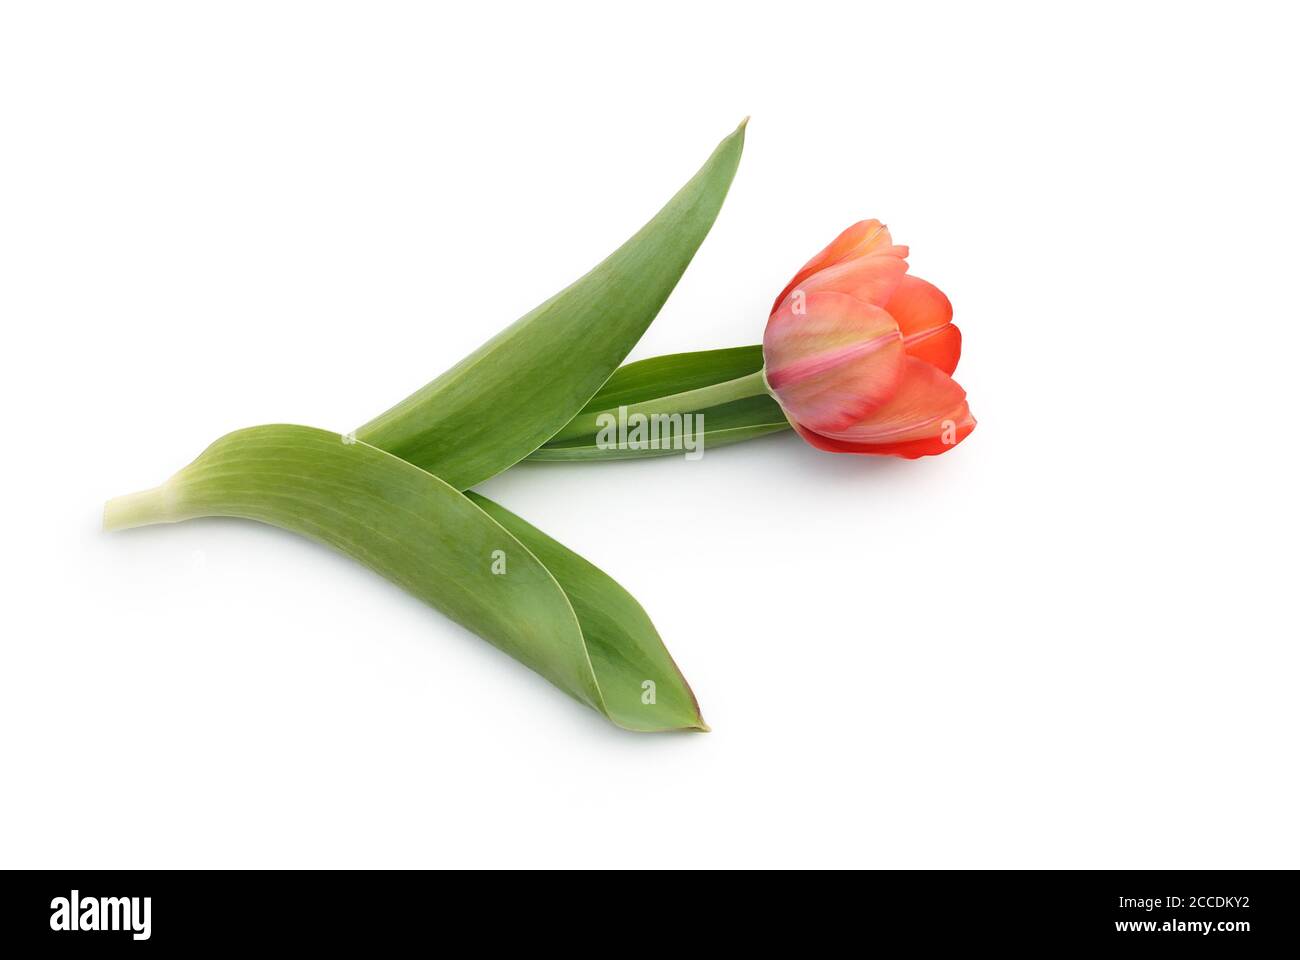 tulipano isolato su sfondo bianco Foto Stock